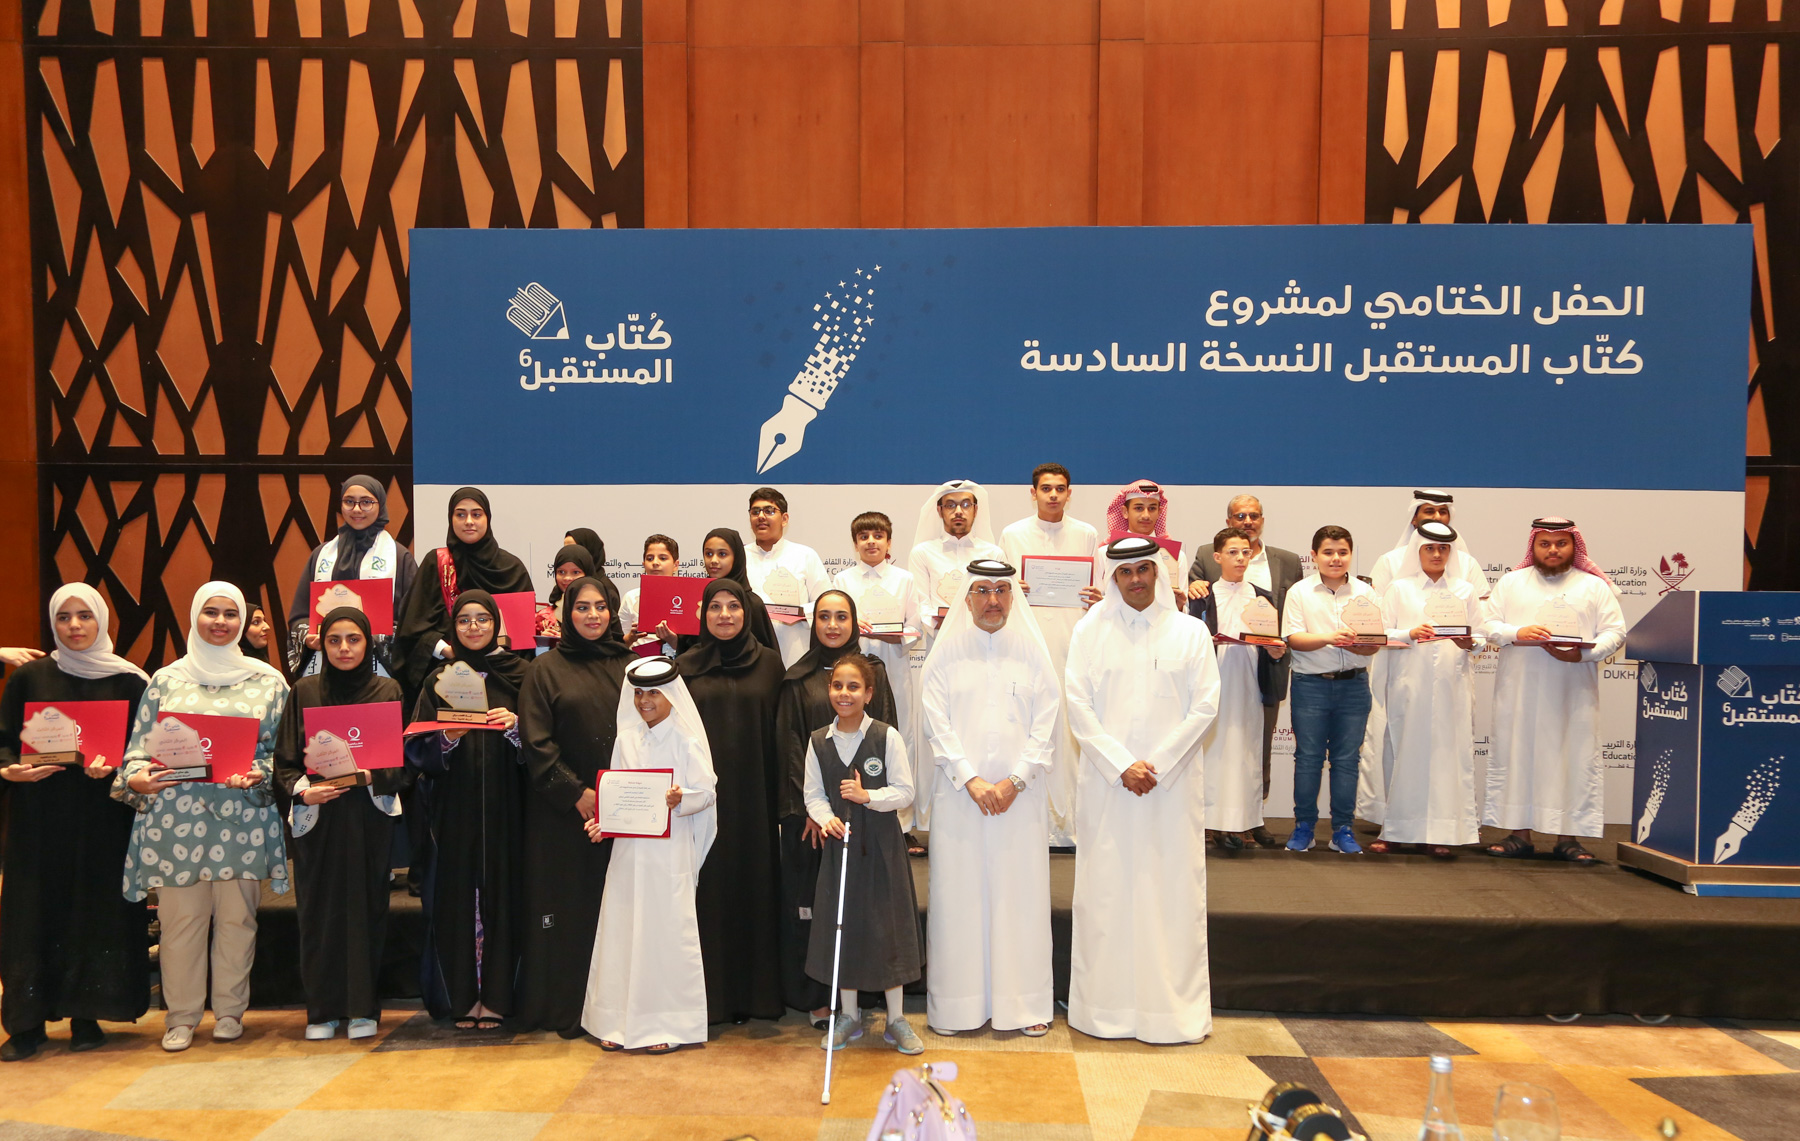 صورة لحفل تكريم الفائزين في النسخة السادسة لبرنامج كتاب المستقبل.